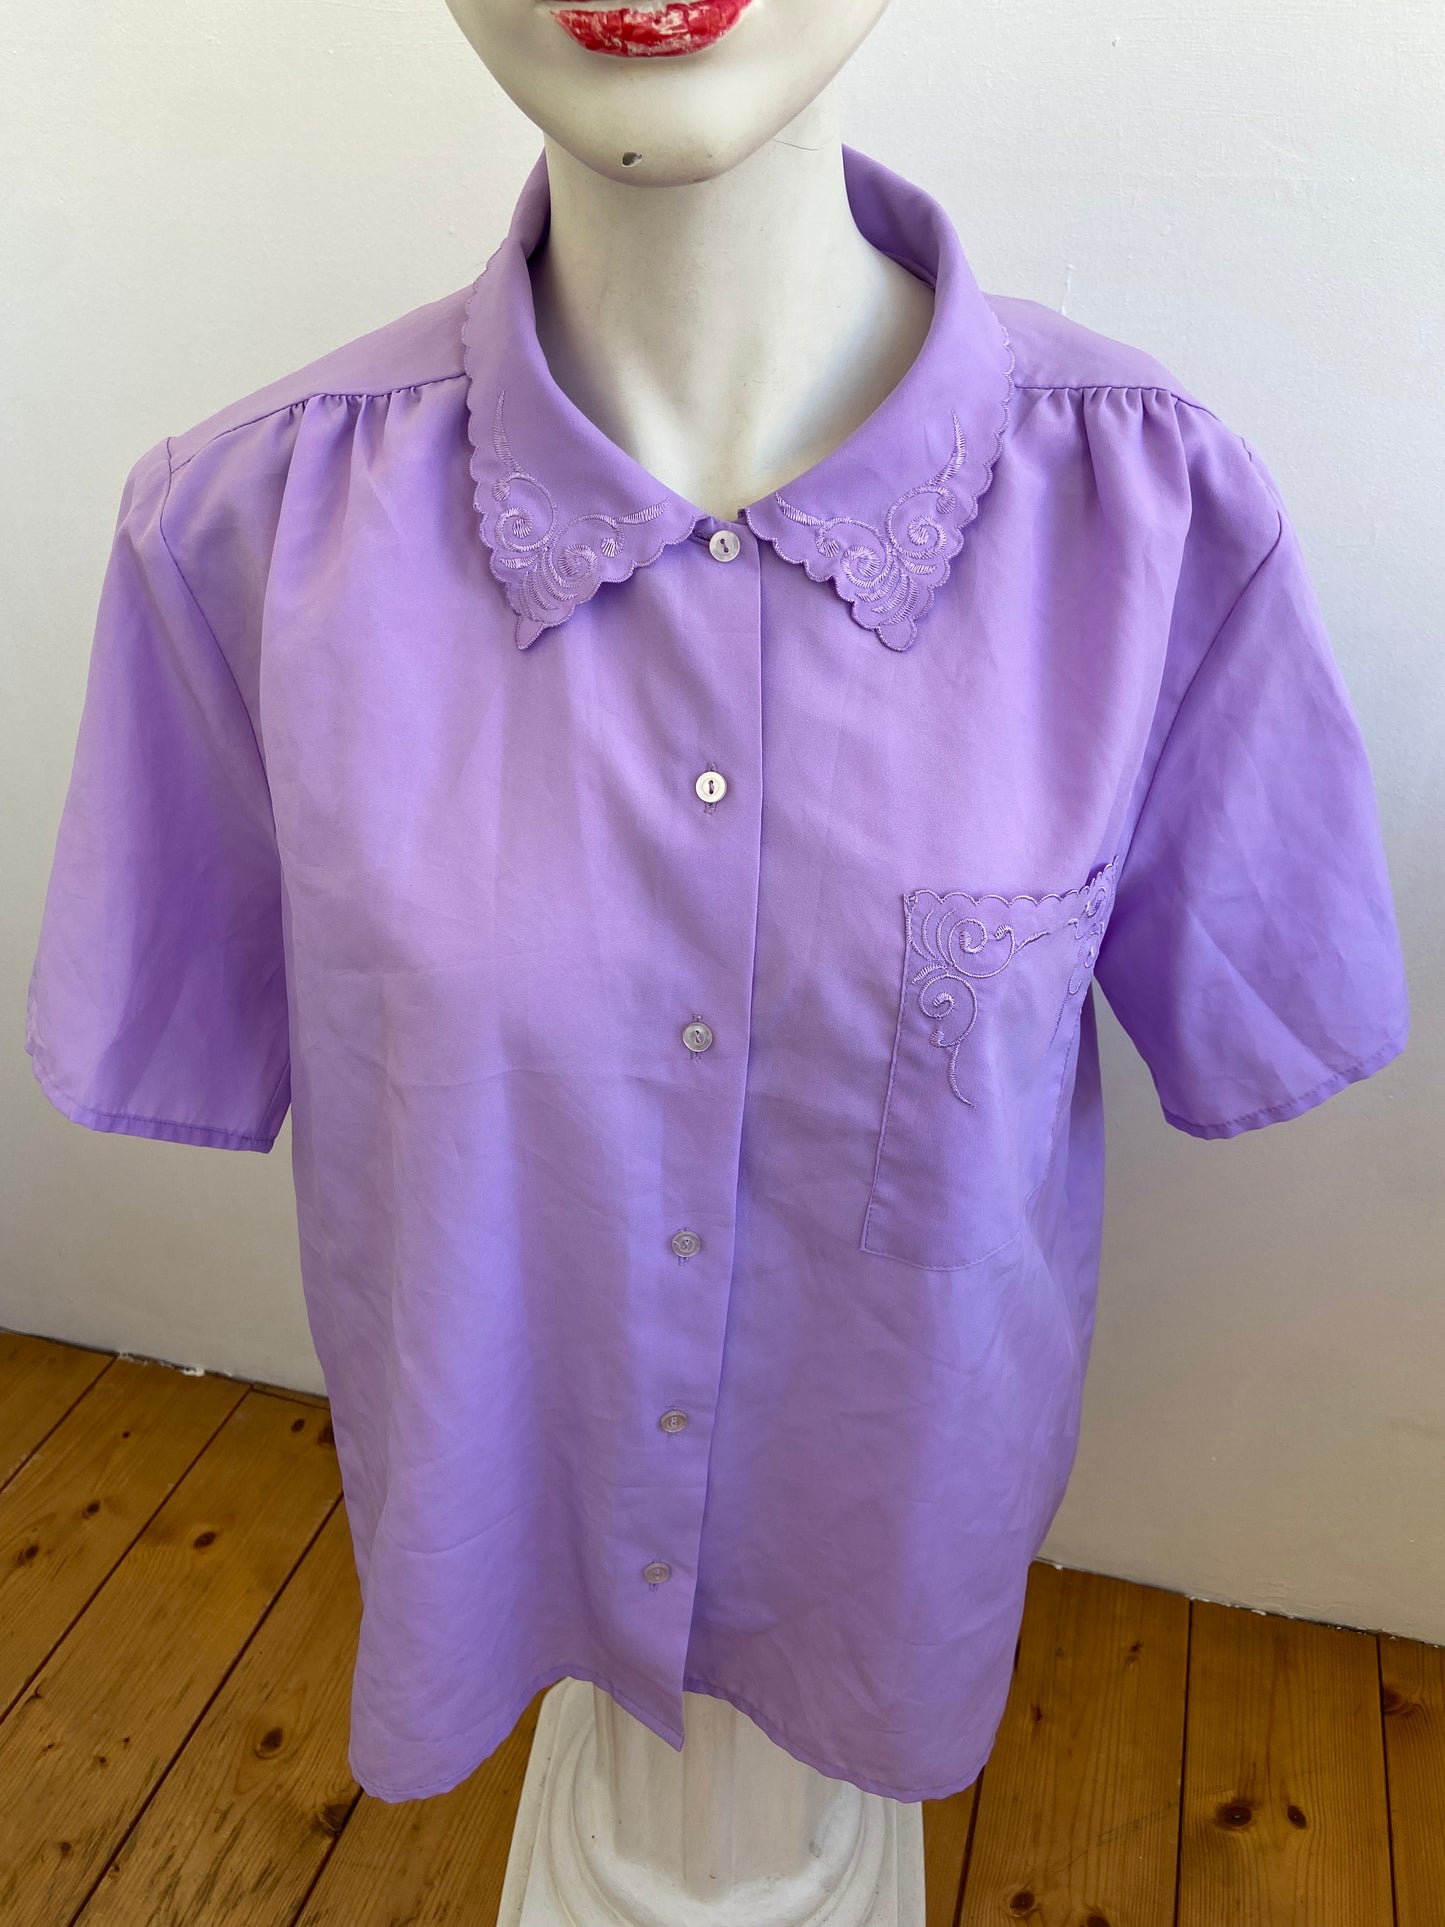 Lilac collar shirt